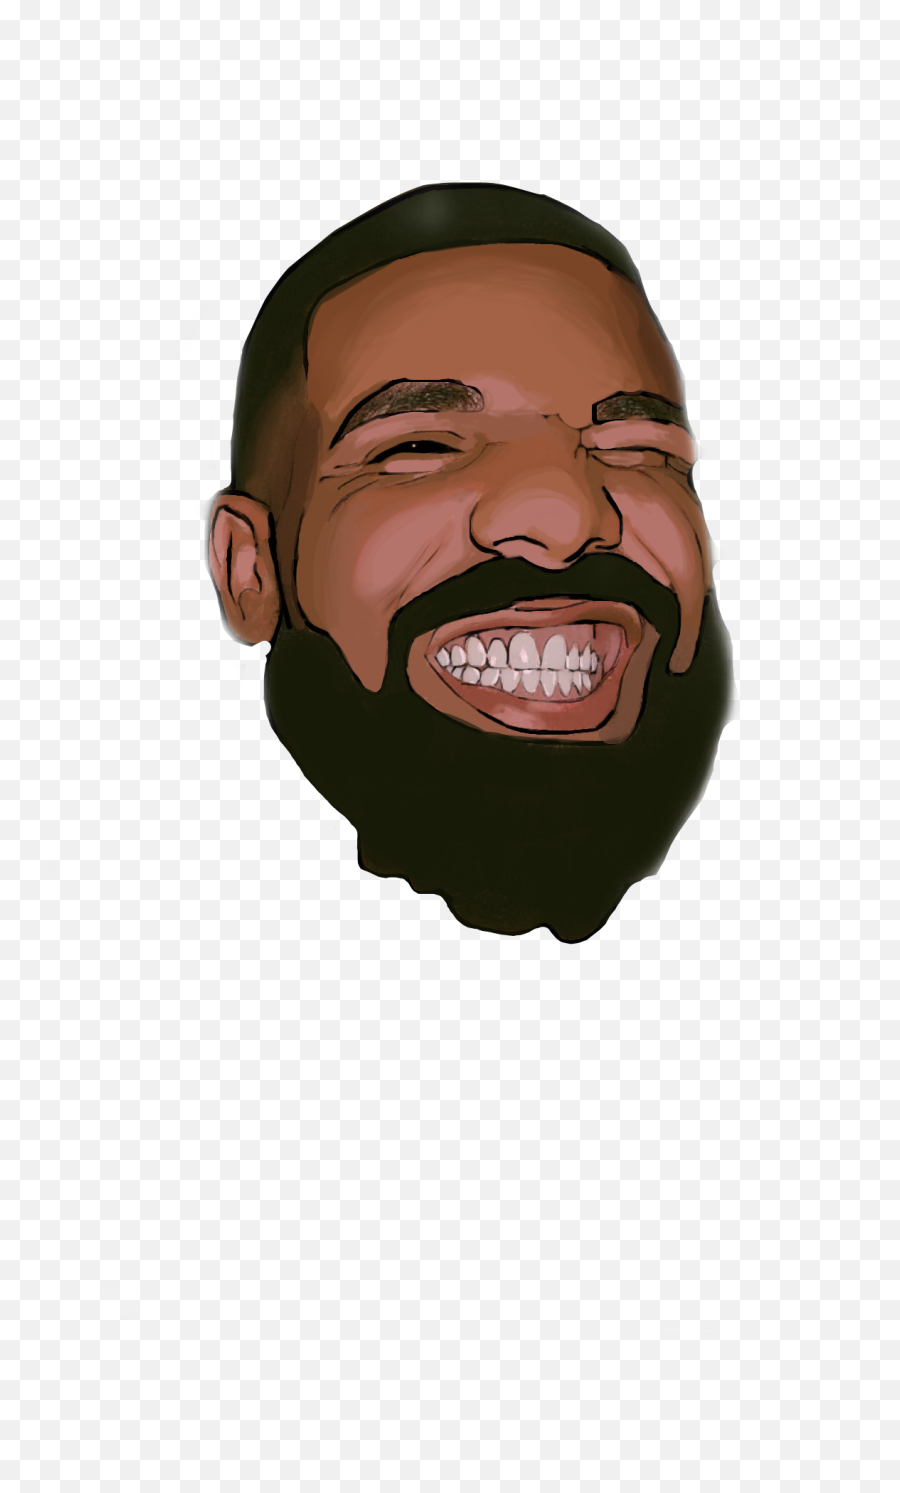 Drake Ovo Scorpio Rapper Smile Happy - Illustration Emoji,How To Get The Ovo Emoji